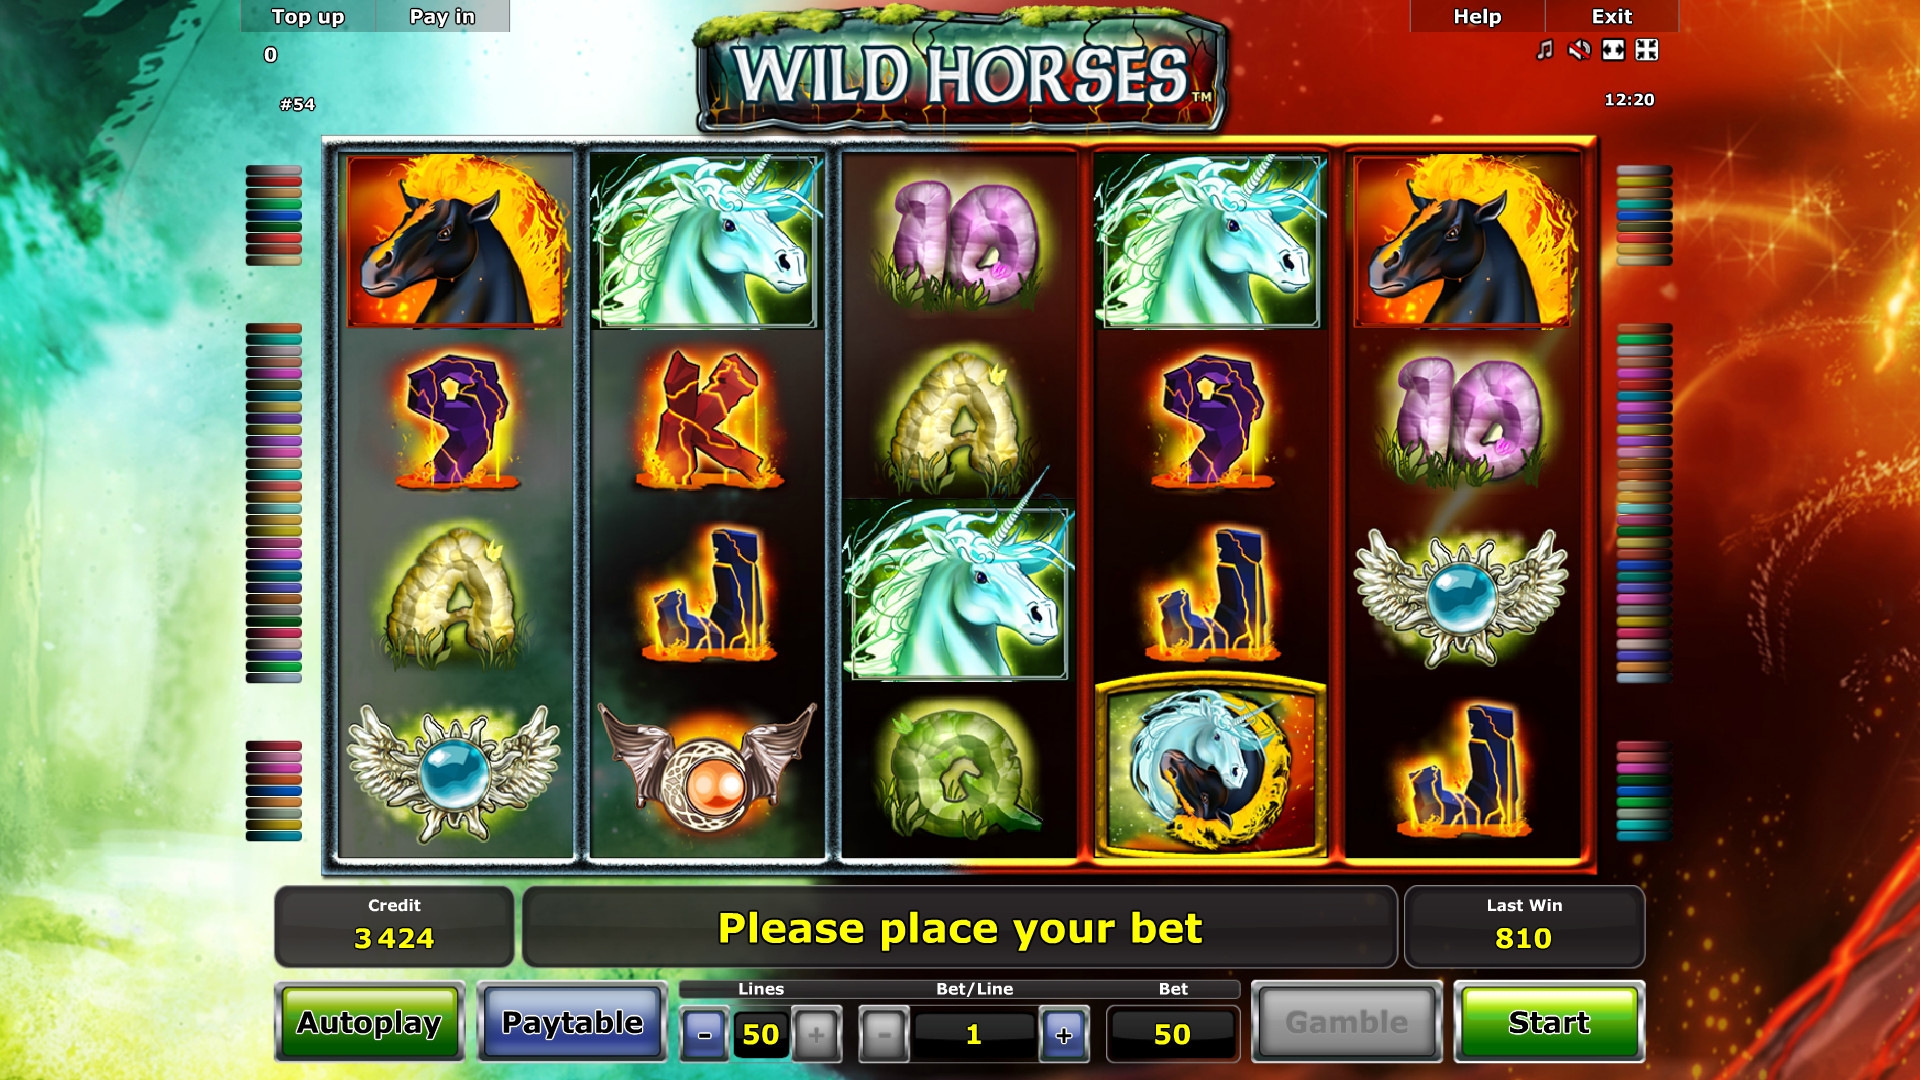 Wild Horses (Wild Horses) from category Slots